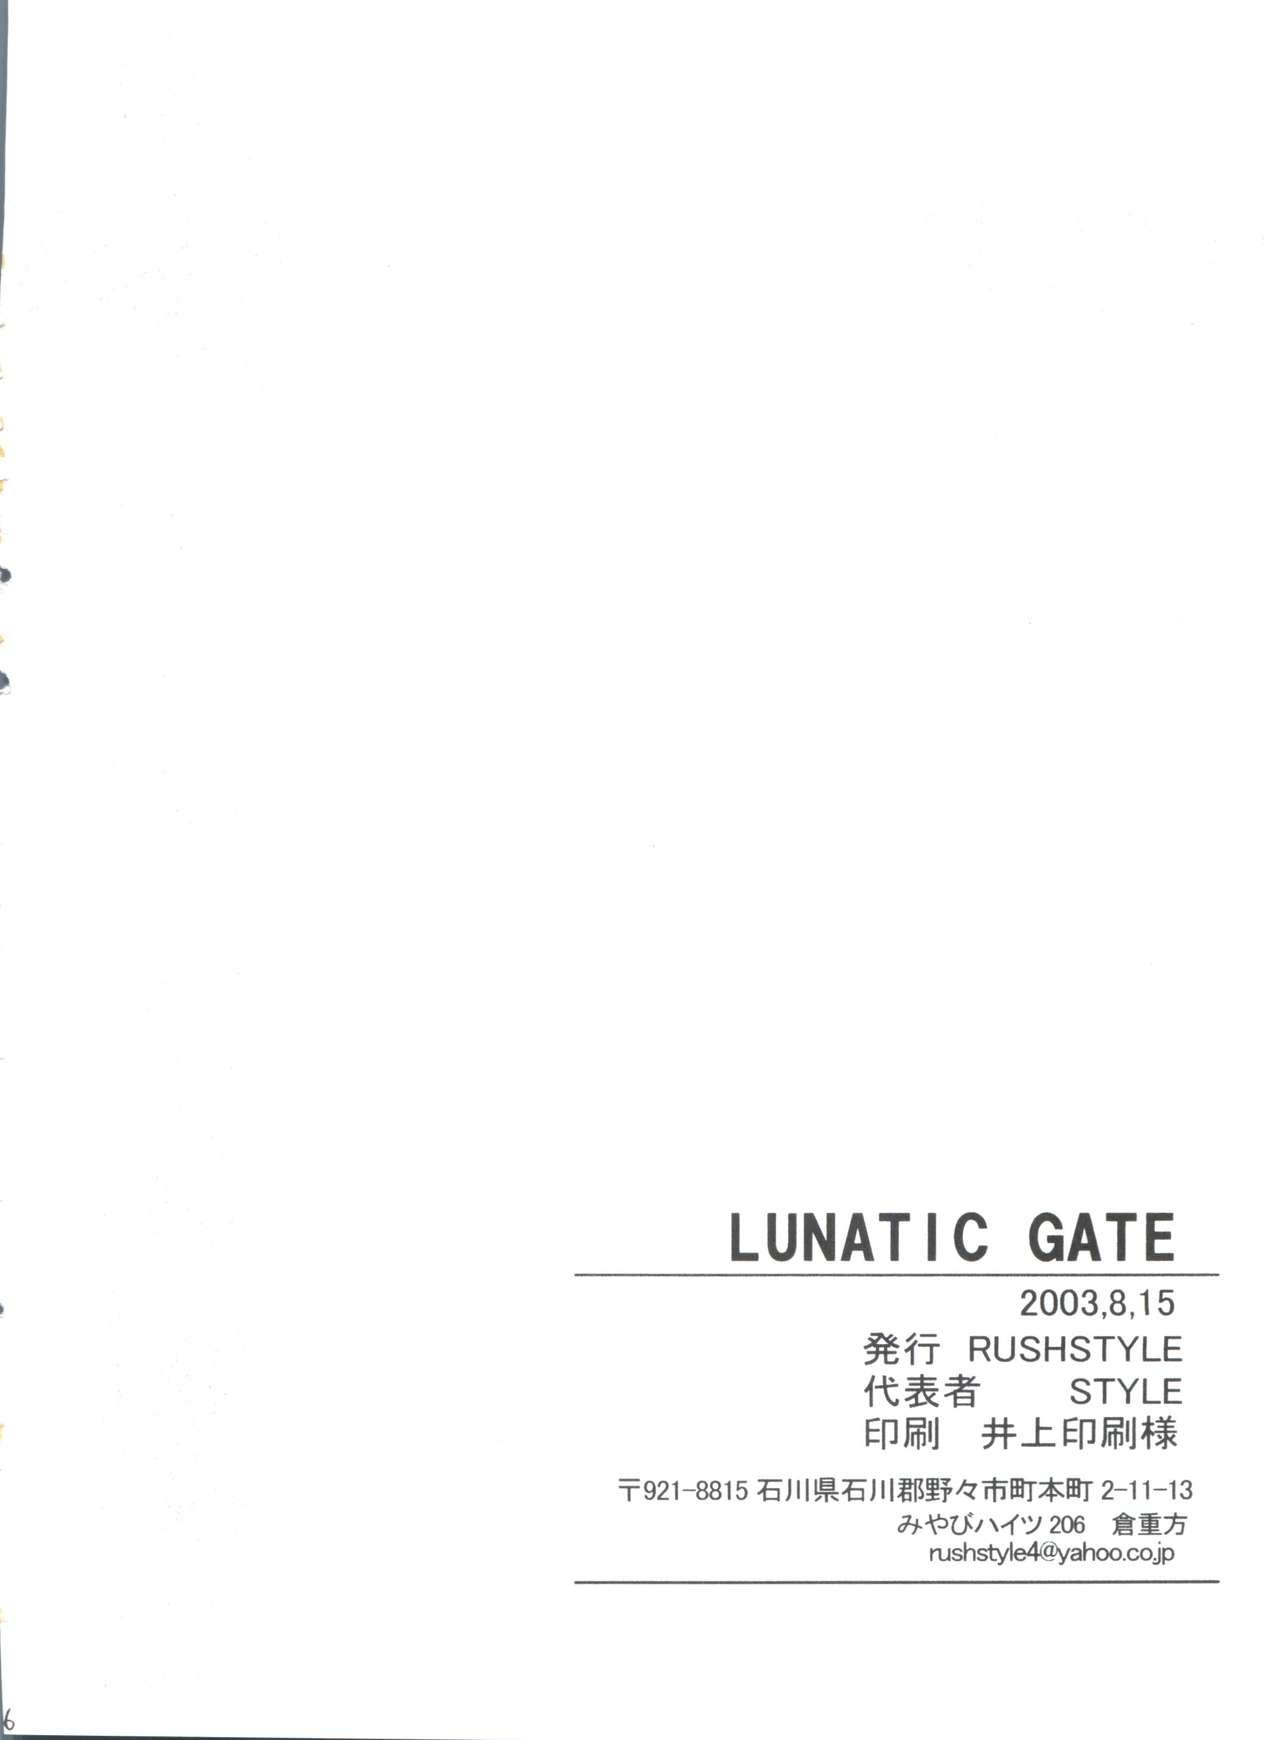 Lunatic Gate 24